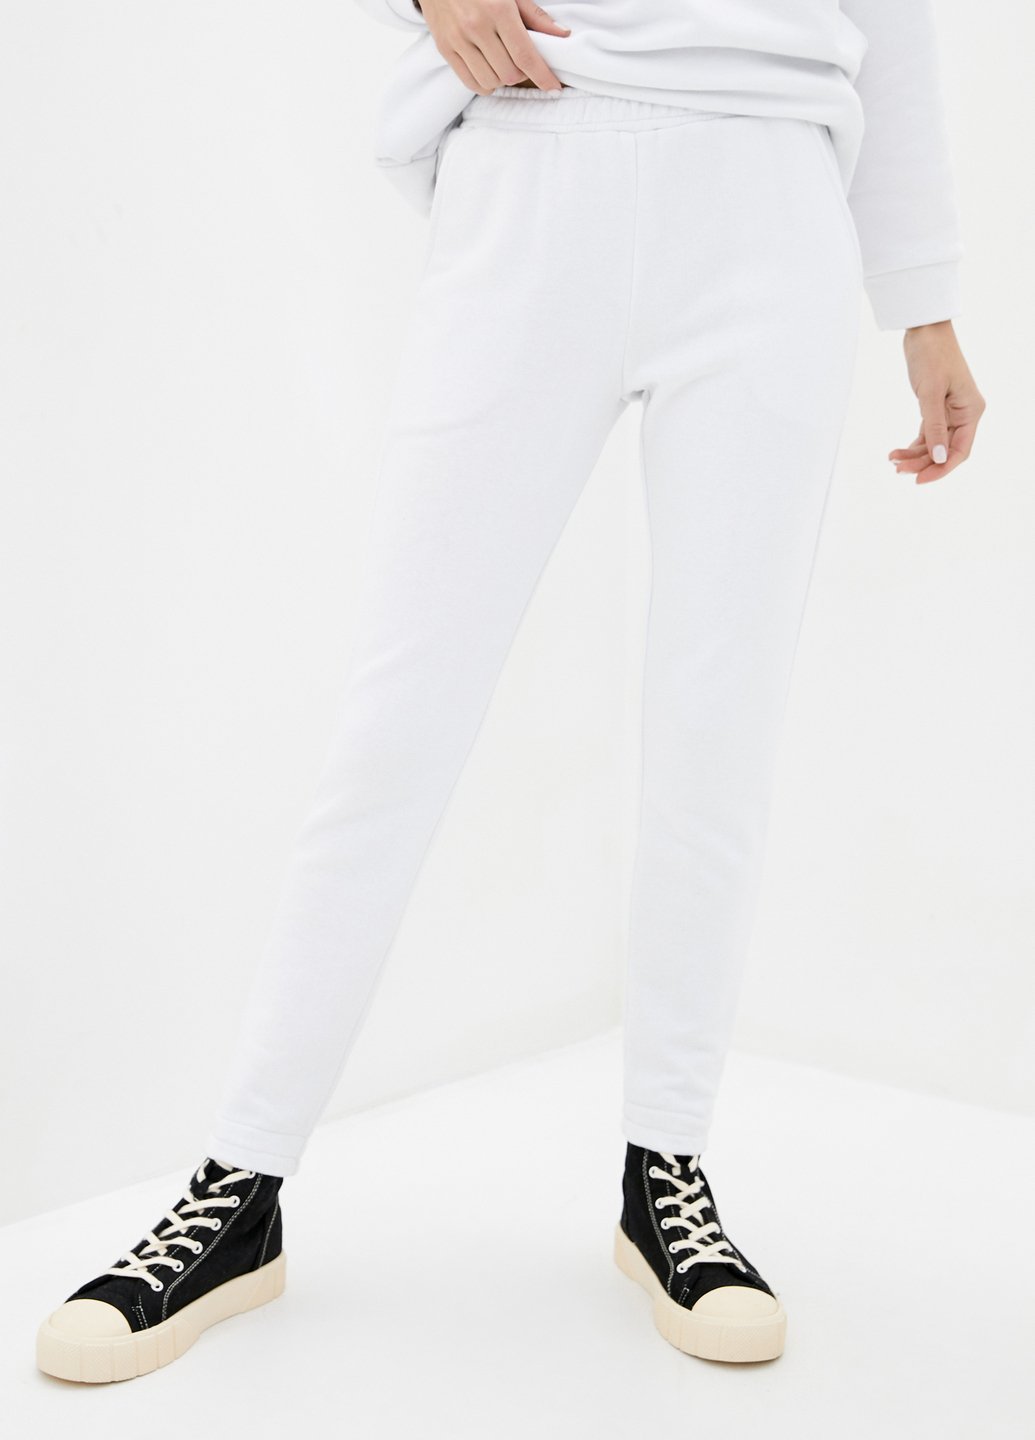 Купити Спортивні штани жіночі Merlini Мадрид 600000047 - Білий, 42-44 в інтернет-магазині